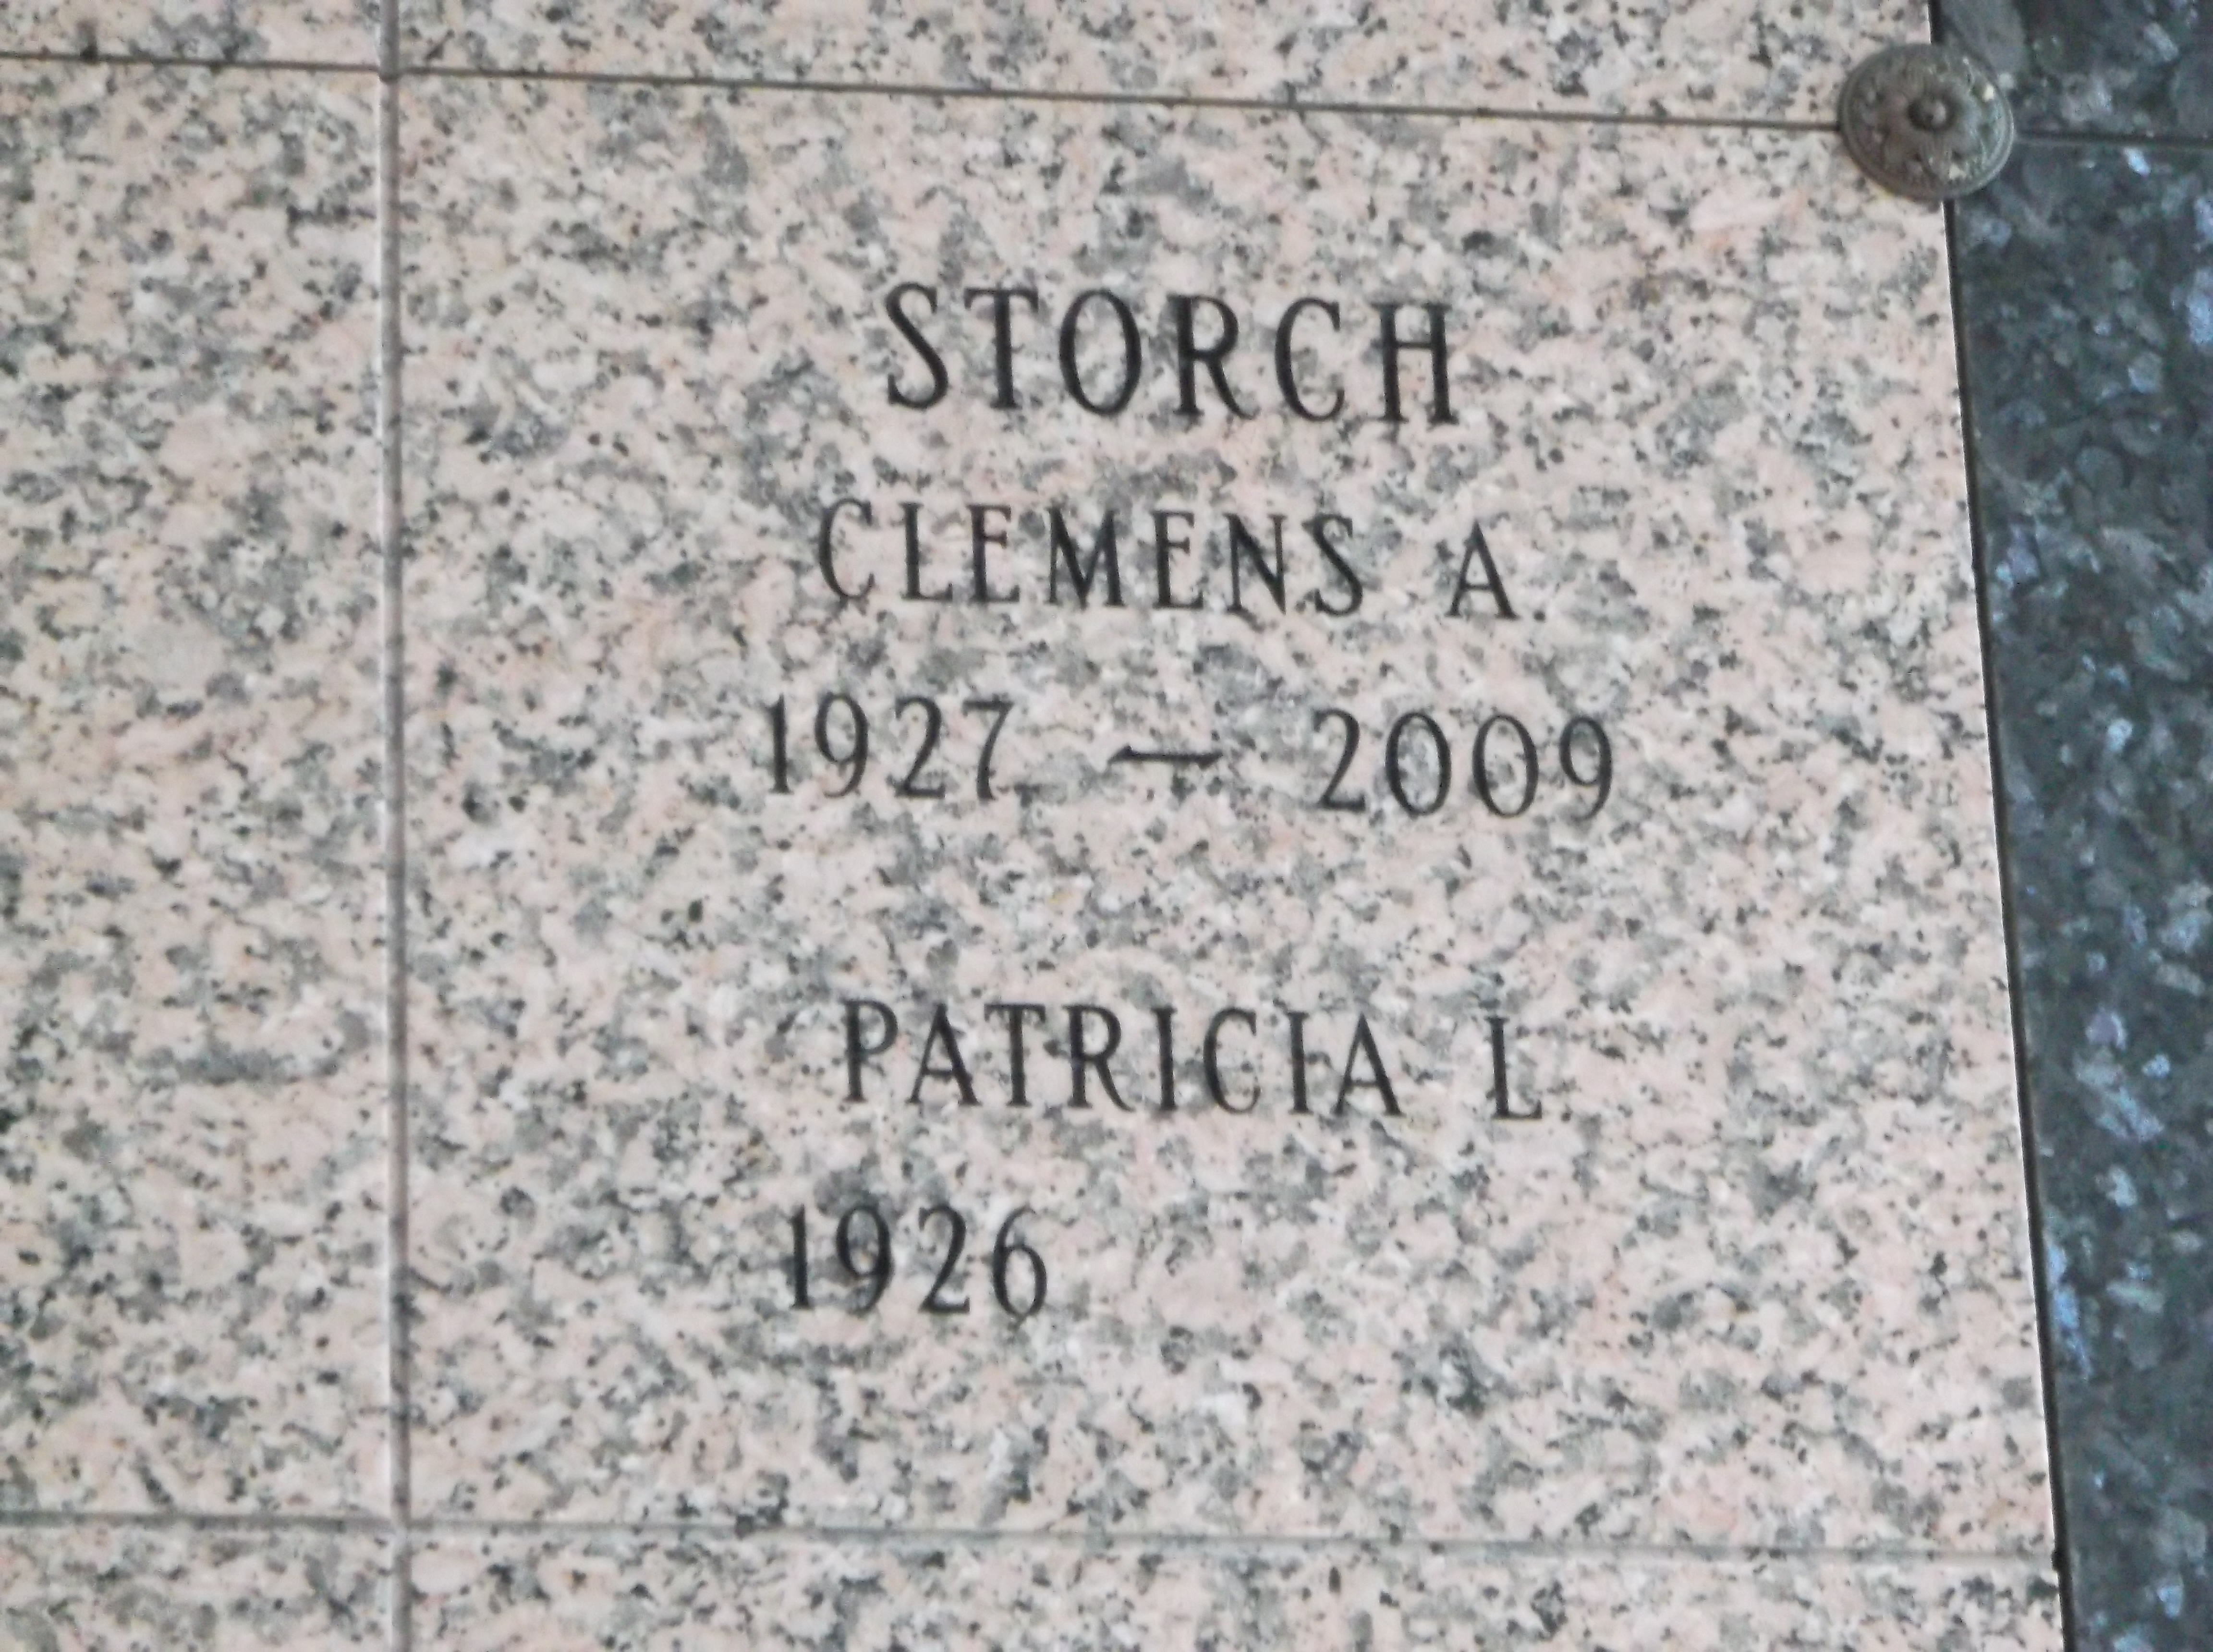 Patricia L Storch